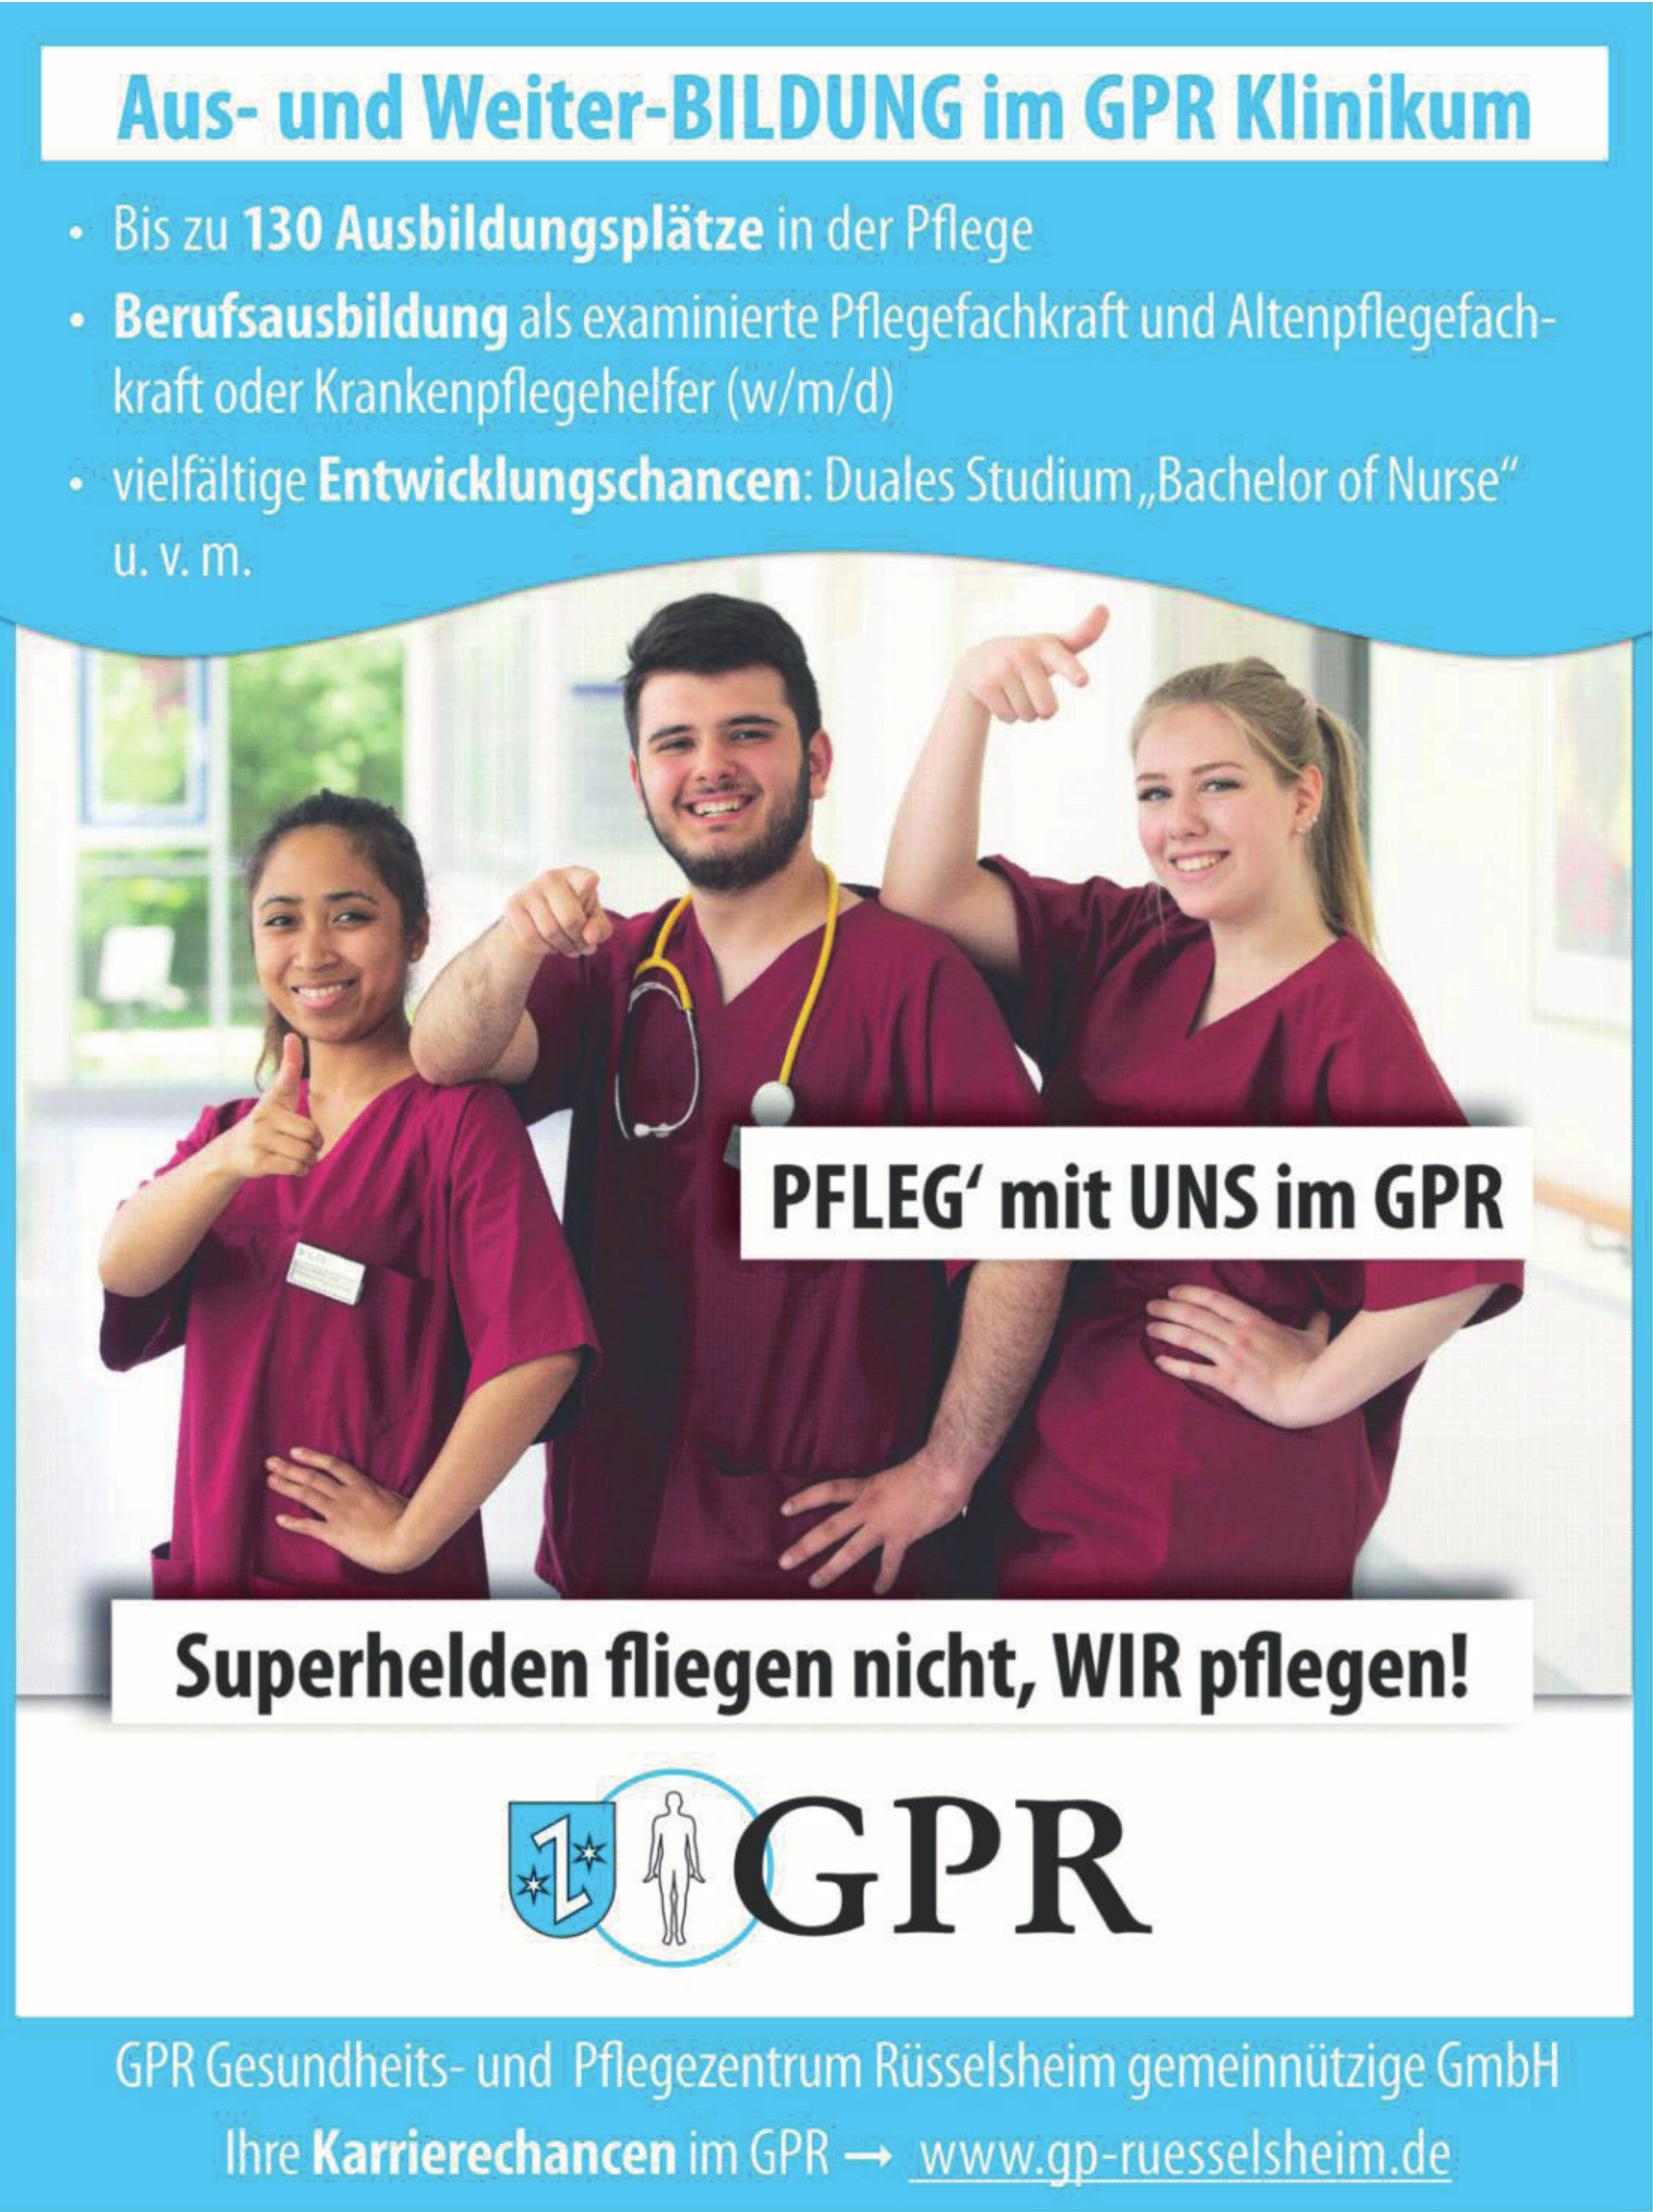 GPR Gesundheits- und Pflegezentrum Rüsselsheim gemeinnützige GmbH